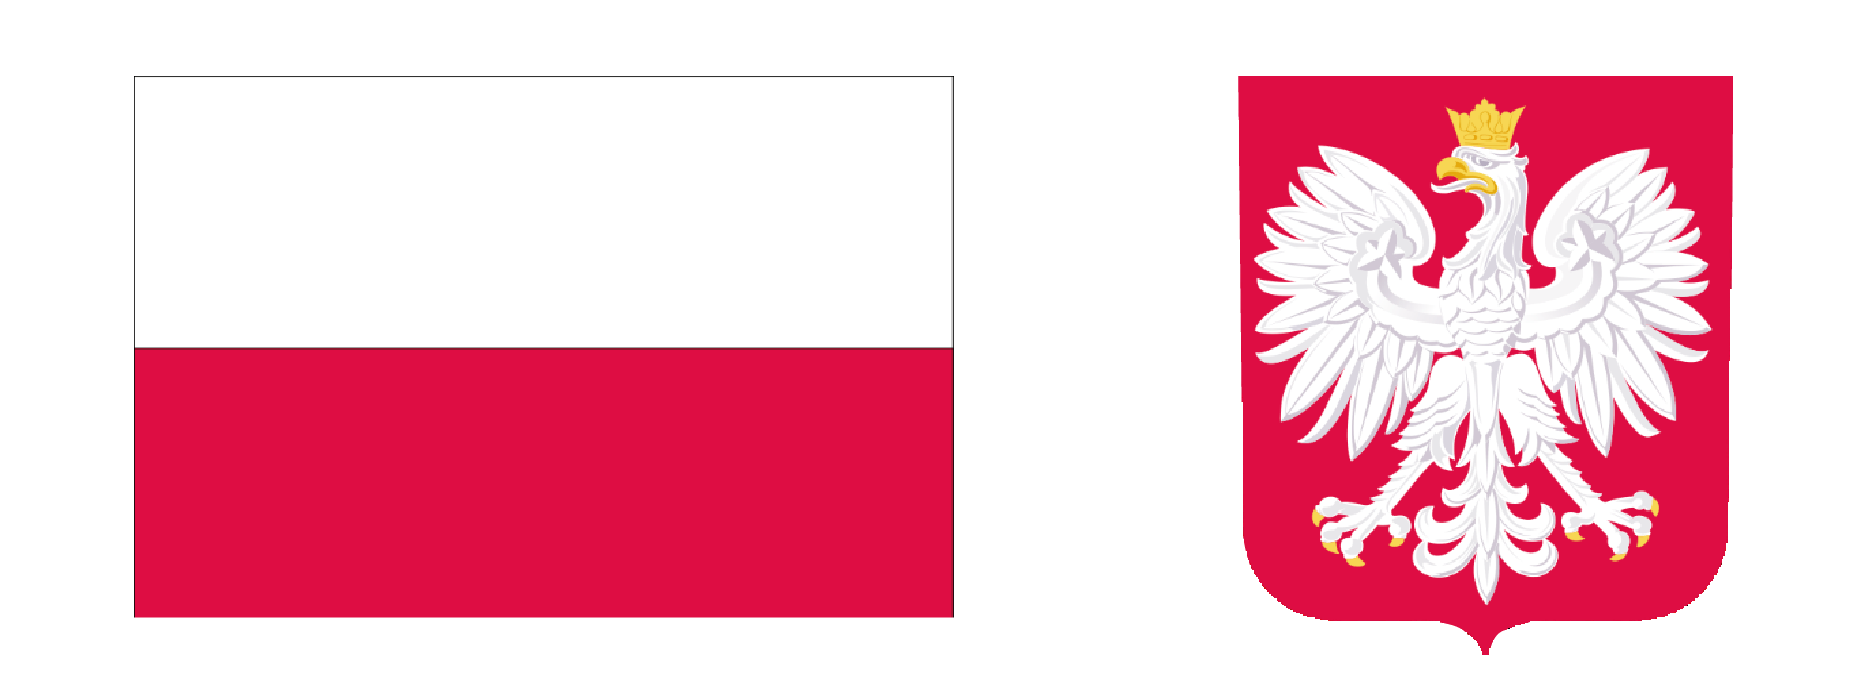 znaki narodowe po lewej stronie flaga Rzeczypospolitej, po prawej stronie godło Polski (orzeł biały na czerwonej tarczy